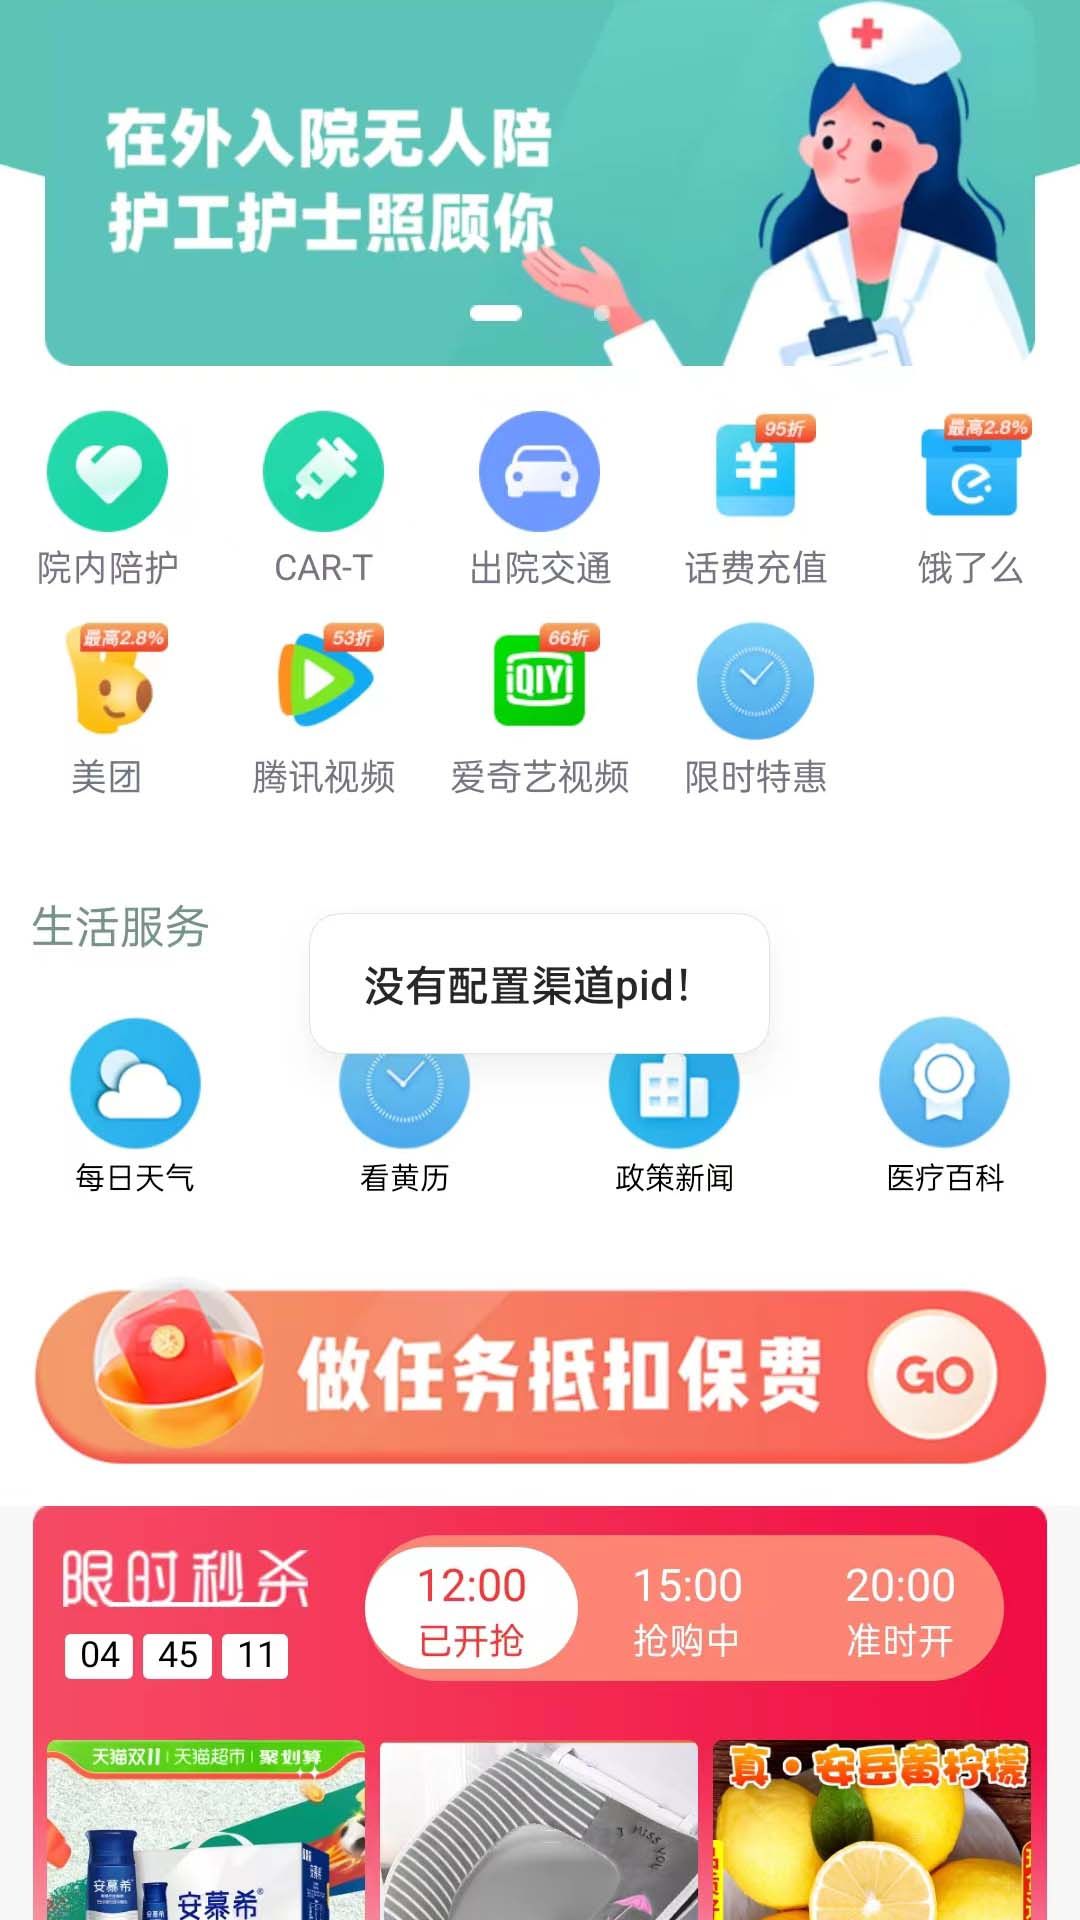 闪电侠骑手服务平台官方app图片1